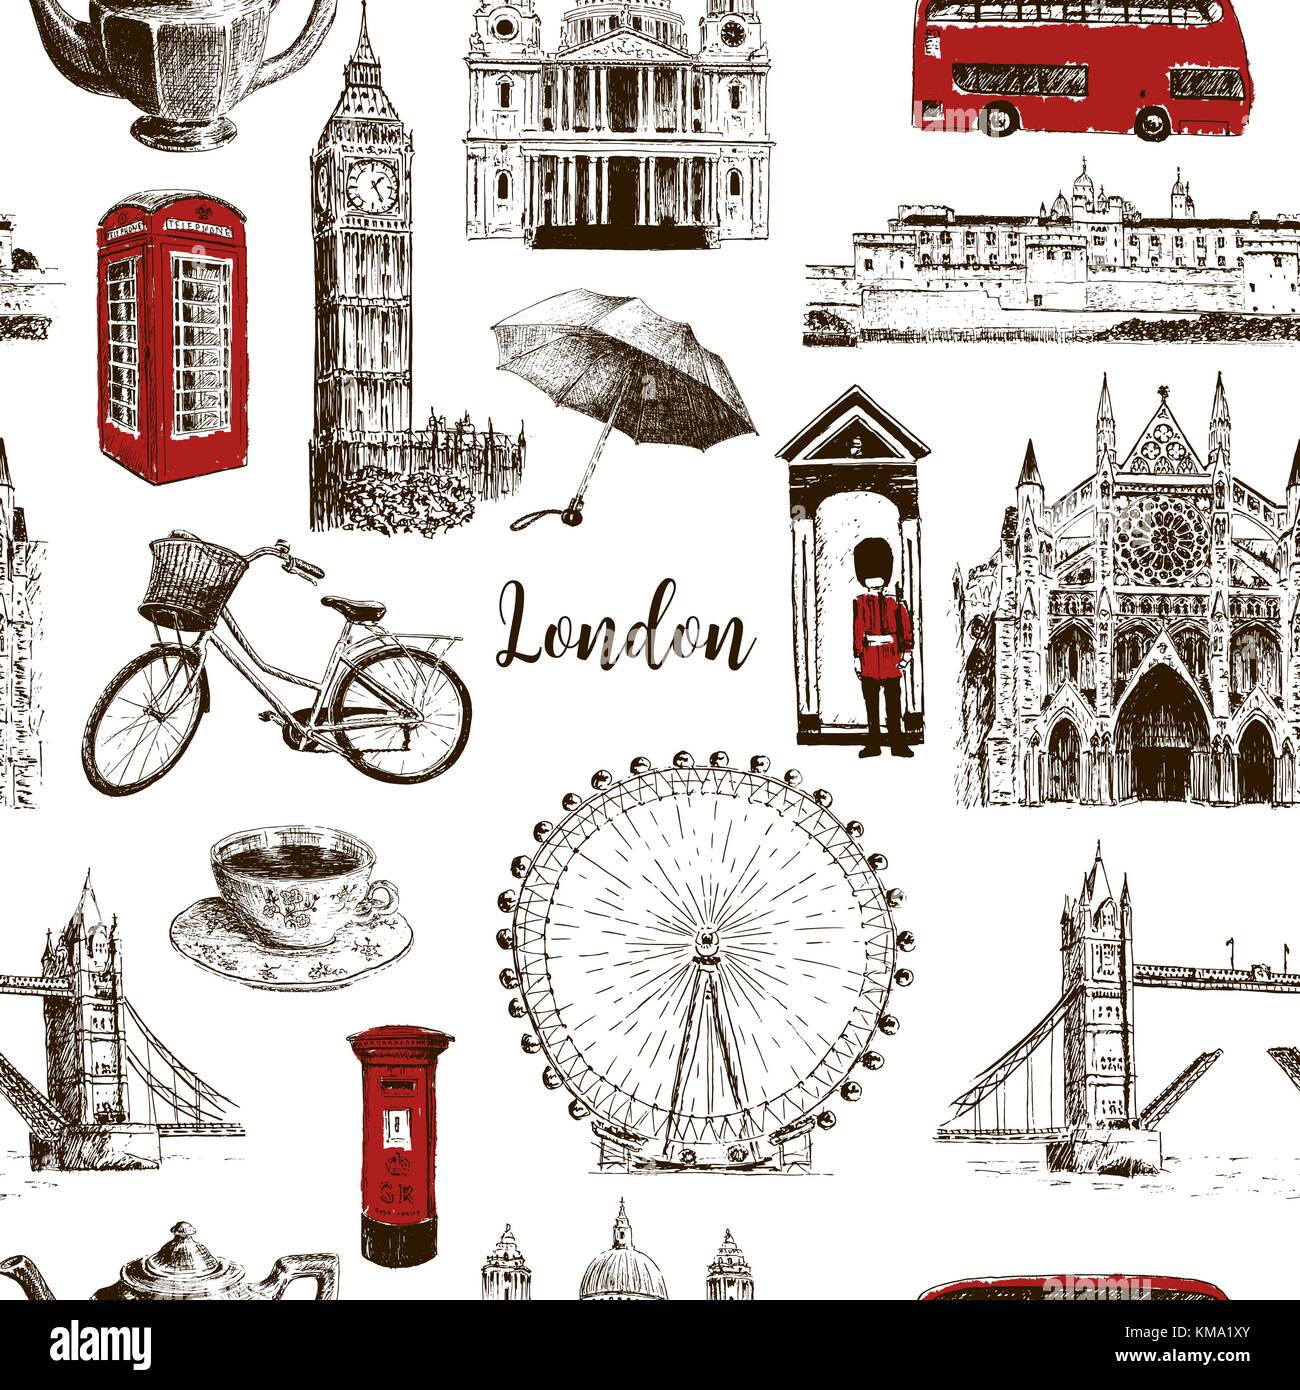 London architektonischen Symbolen Hand gezeichnet Vektor nahtlose Muster Skizze. Big Ben, die Tower Bridge, roter Bus, Briefkasten, Anruf, Scots Guards Stock Vektor